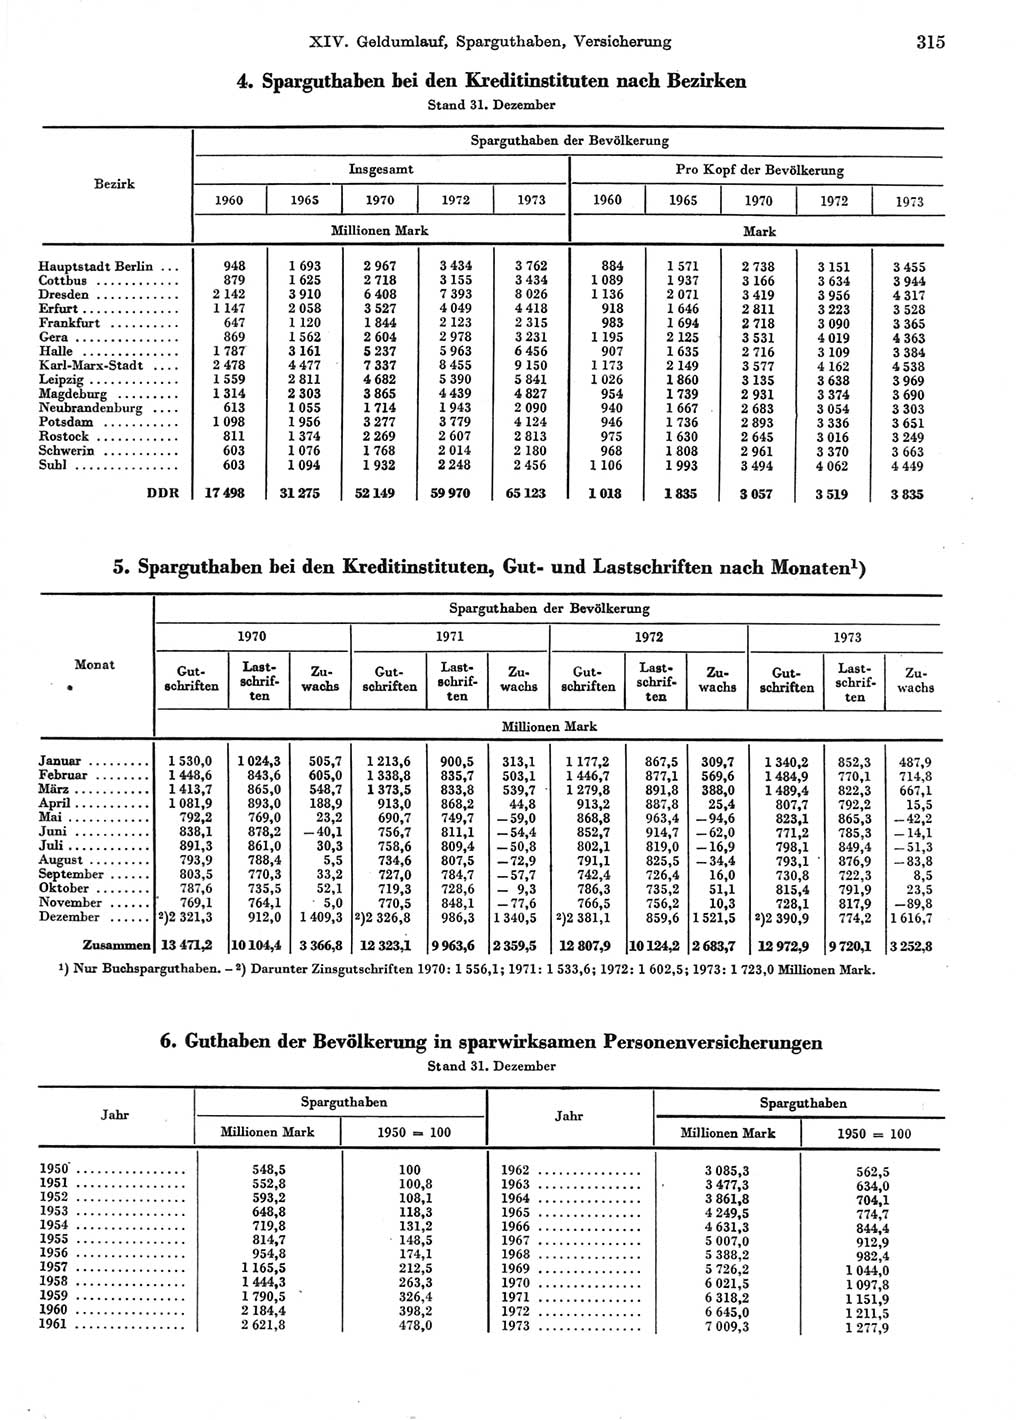 Statistisches Jahrbuch der Deutschen Demokratischen Republik (DDR) 1974, Seite 315 (Stat. Jb. DDR 1974, S. 315)